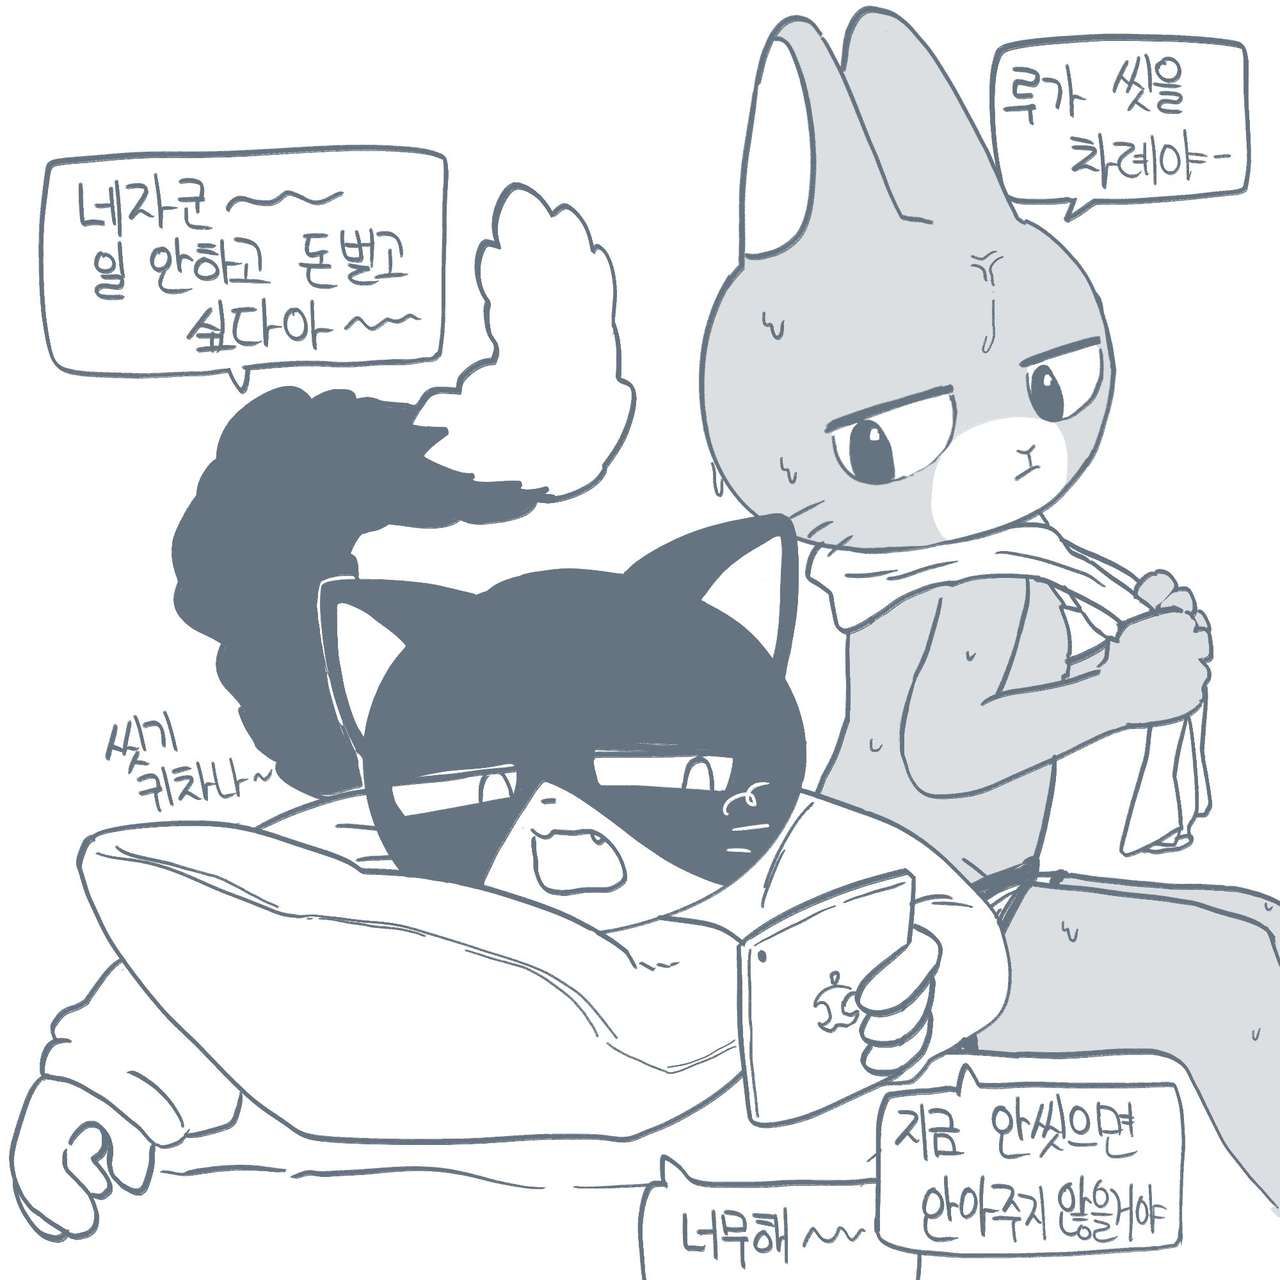 [twitter] kaicuirabbit (56480341) 3